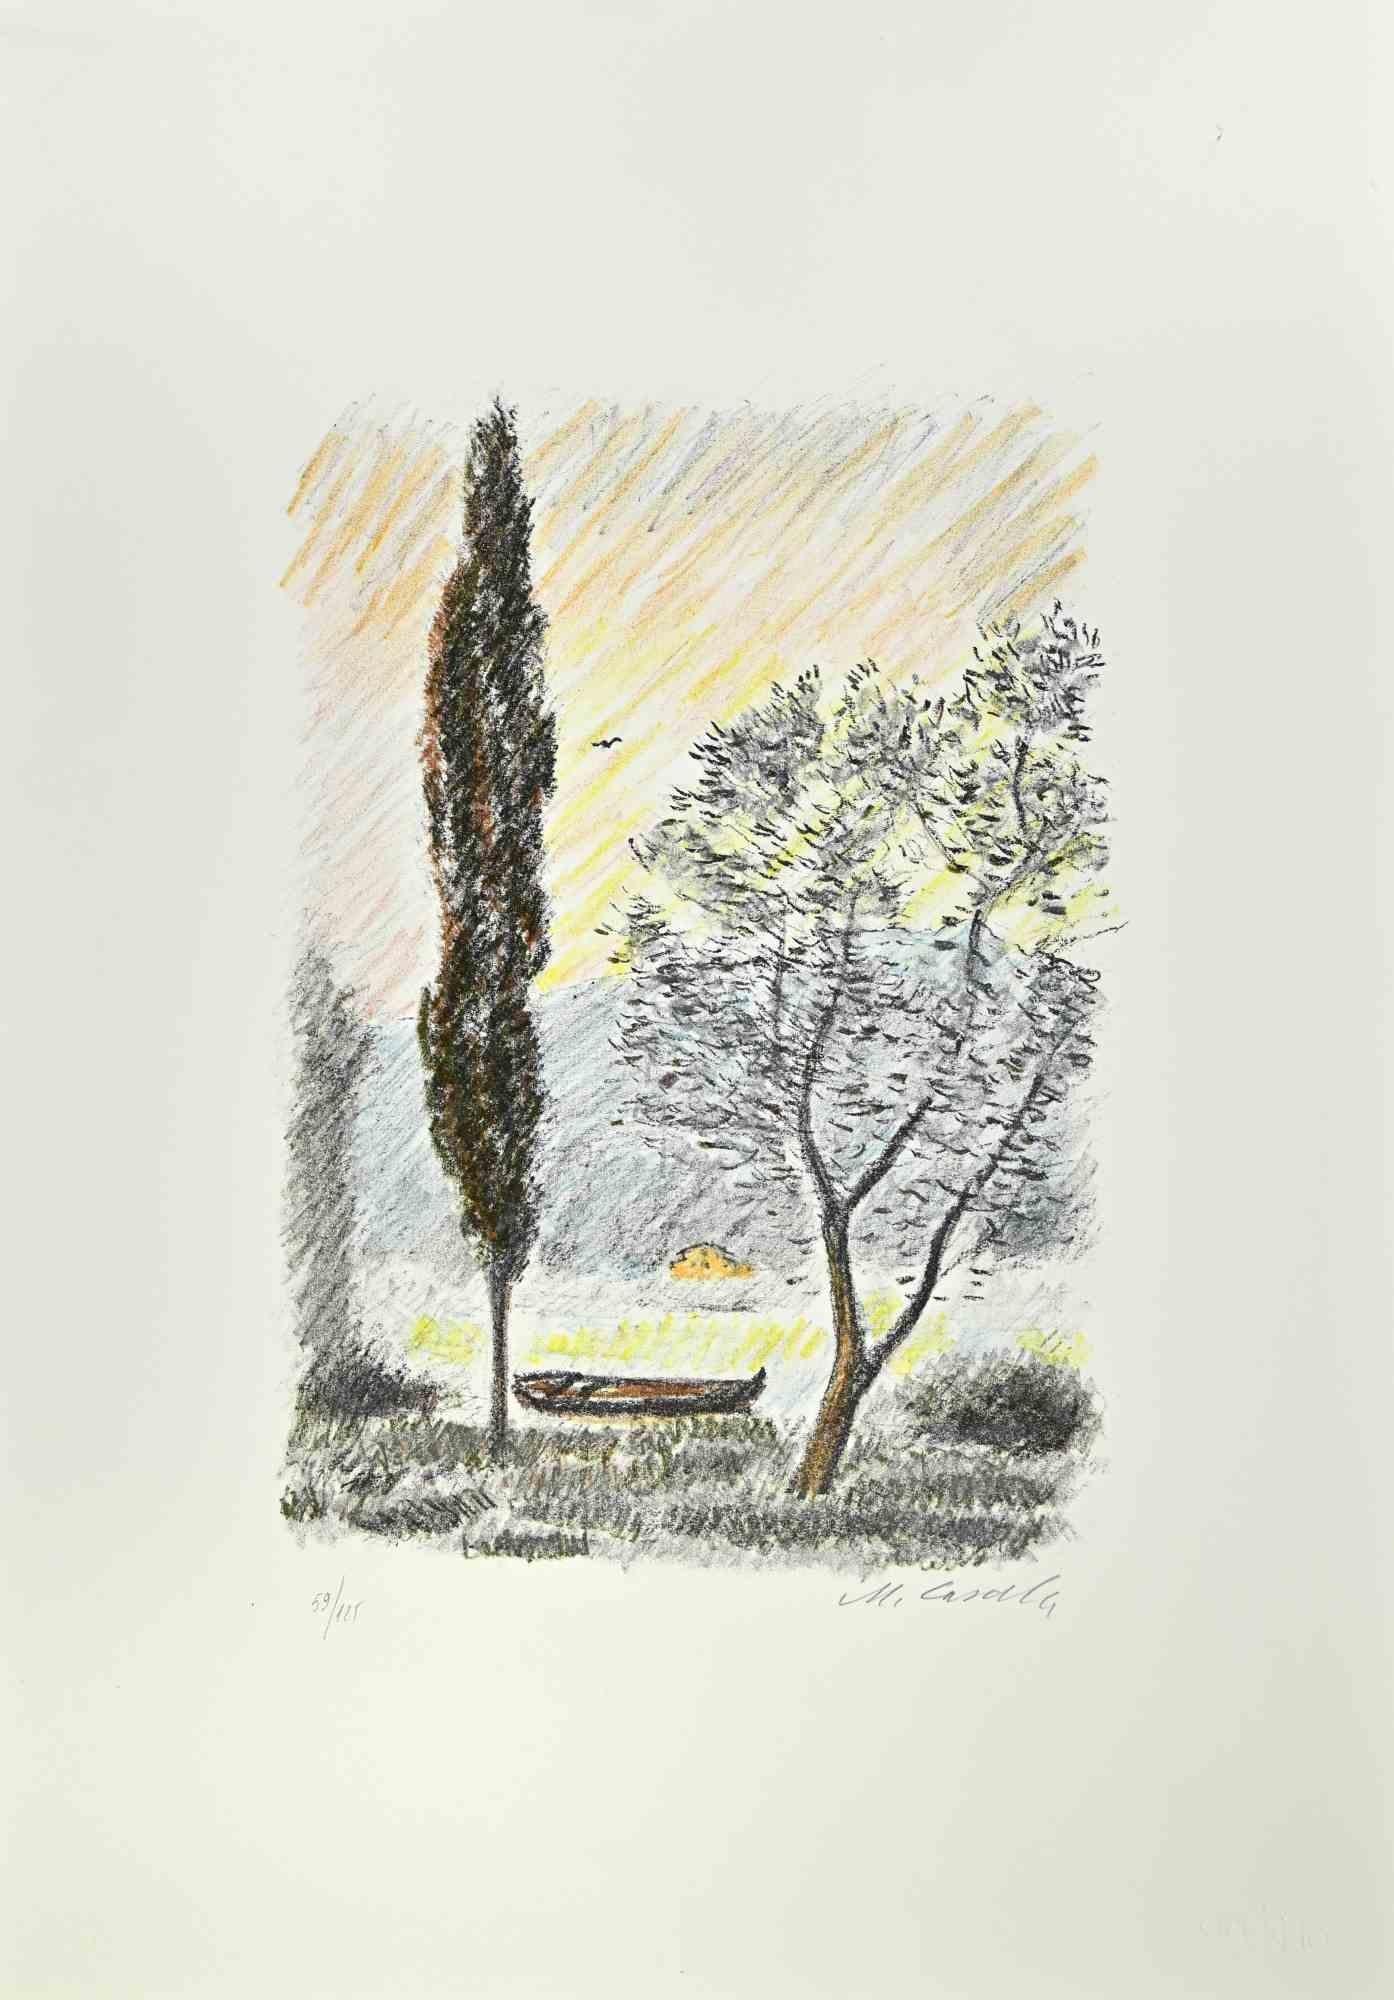 Der Pinienwald von Pescara ist ein Kunstwerk des italienischen Künstlers Michele Cascella aus dem Jahr 1979.

Kolorierte Lithographie auf Papier der Mappe "Landschaft", 1979, mit sechs Originallithographien und den Gedichten von Franco Simongini mit